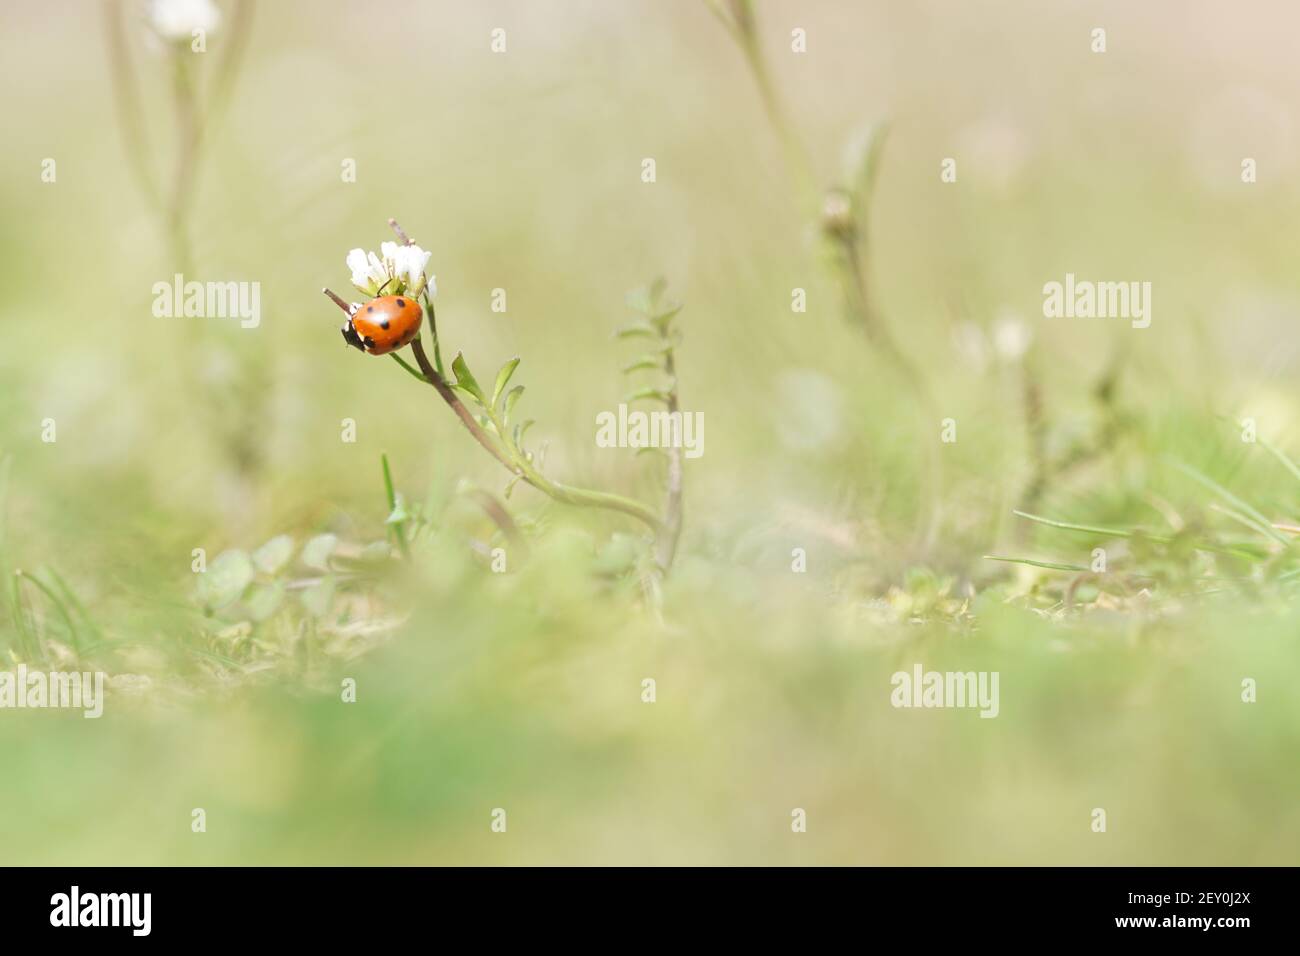 heure de printemps - photo macro de coccinelle assise sur la fleur Banque D'Images